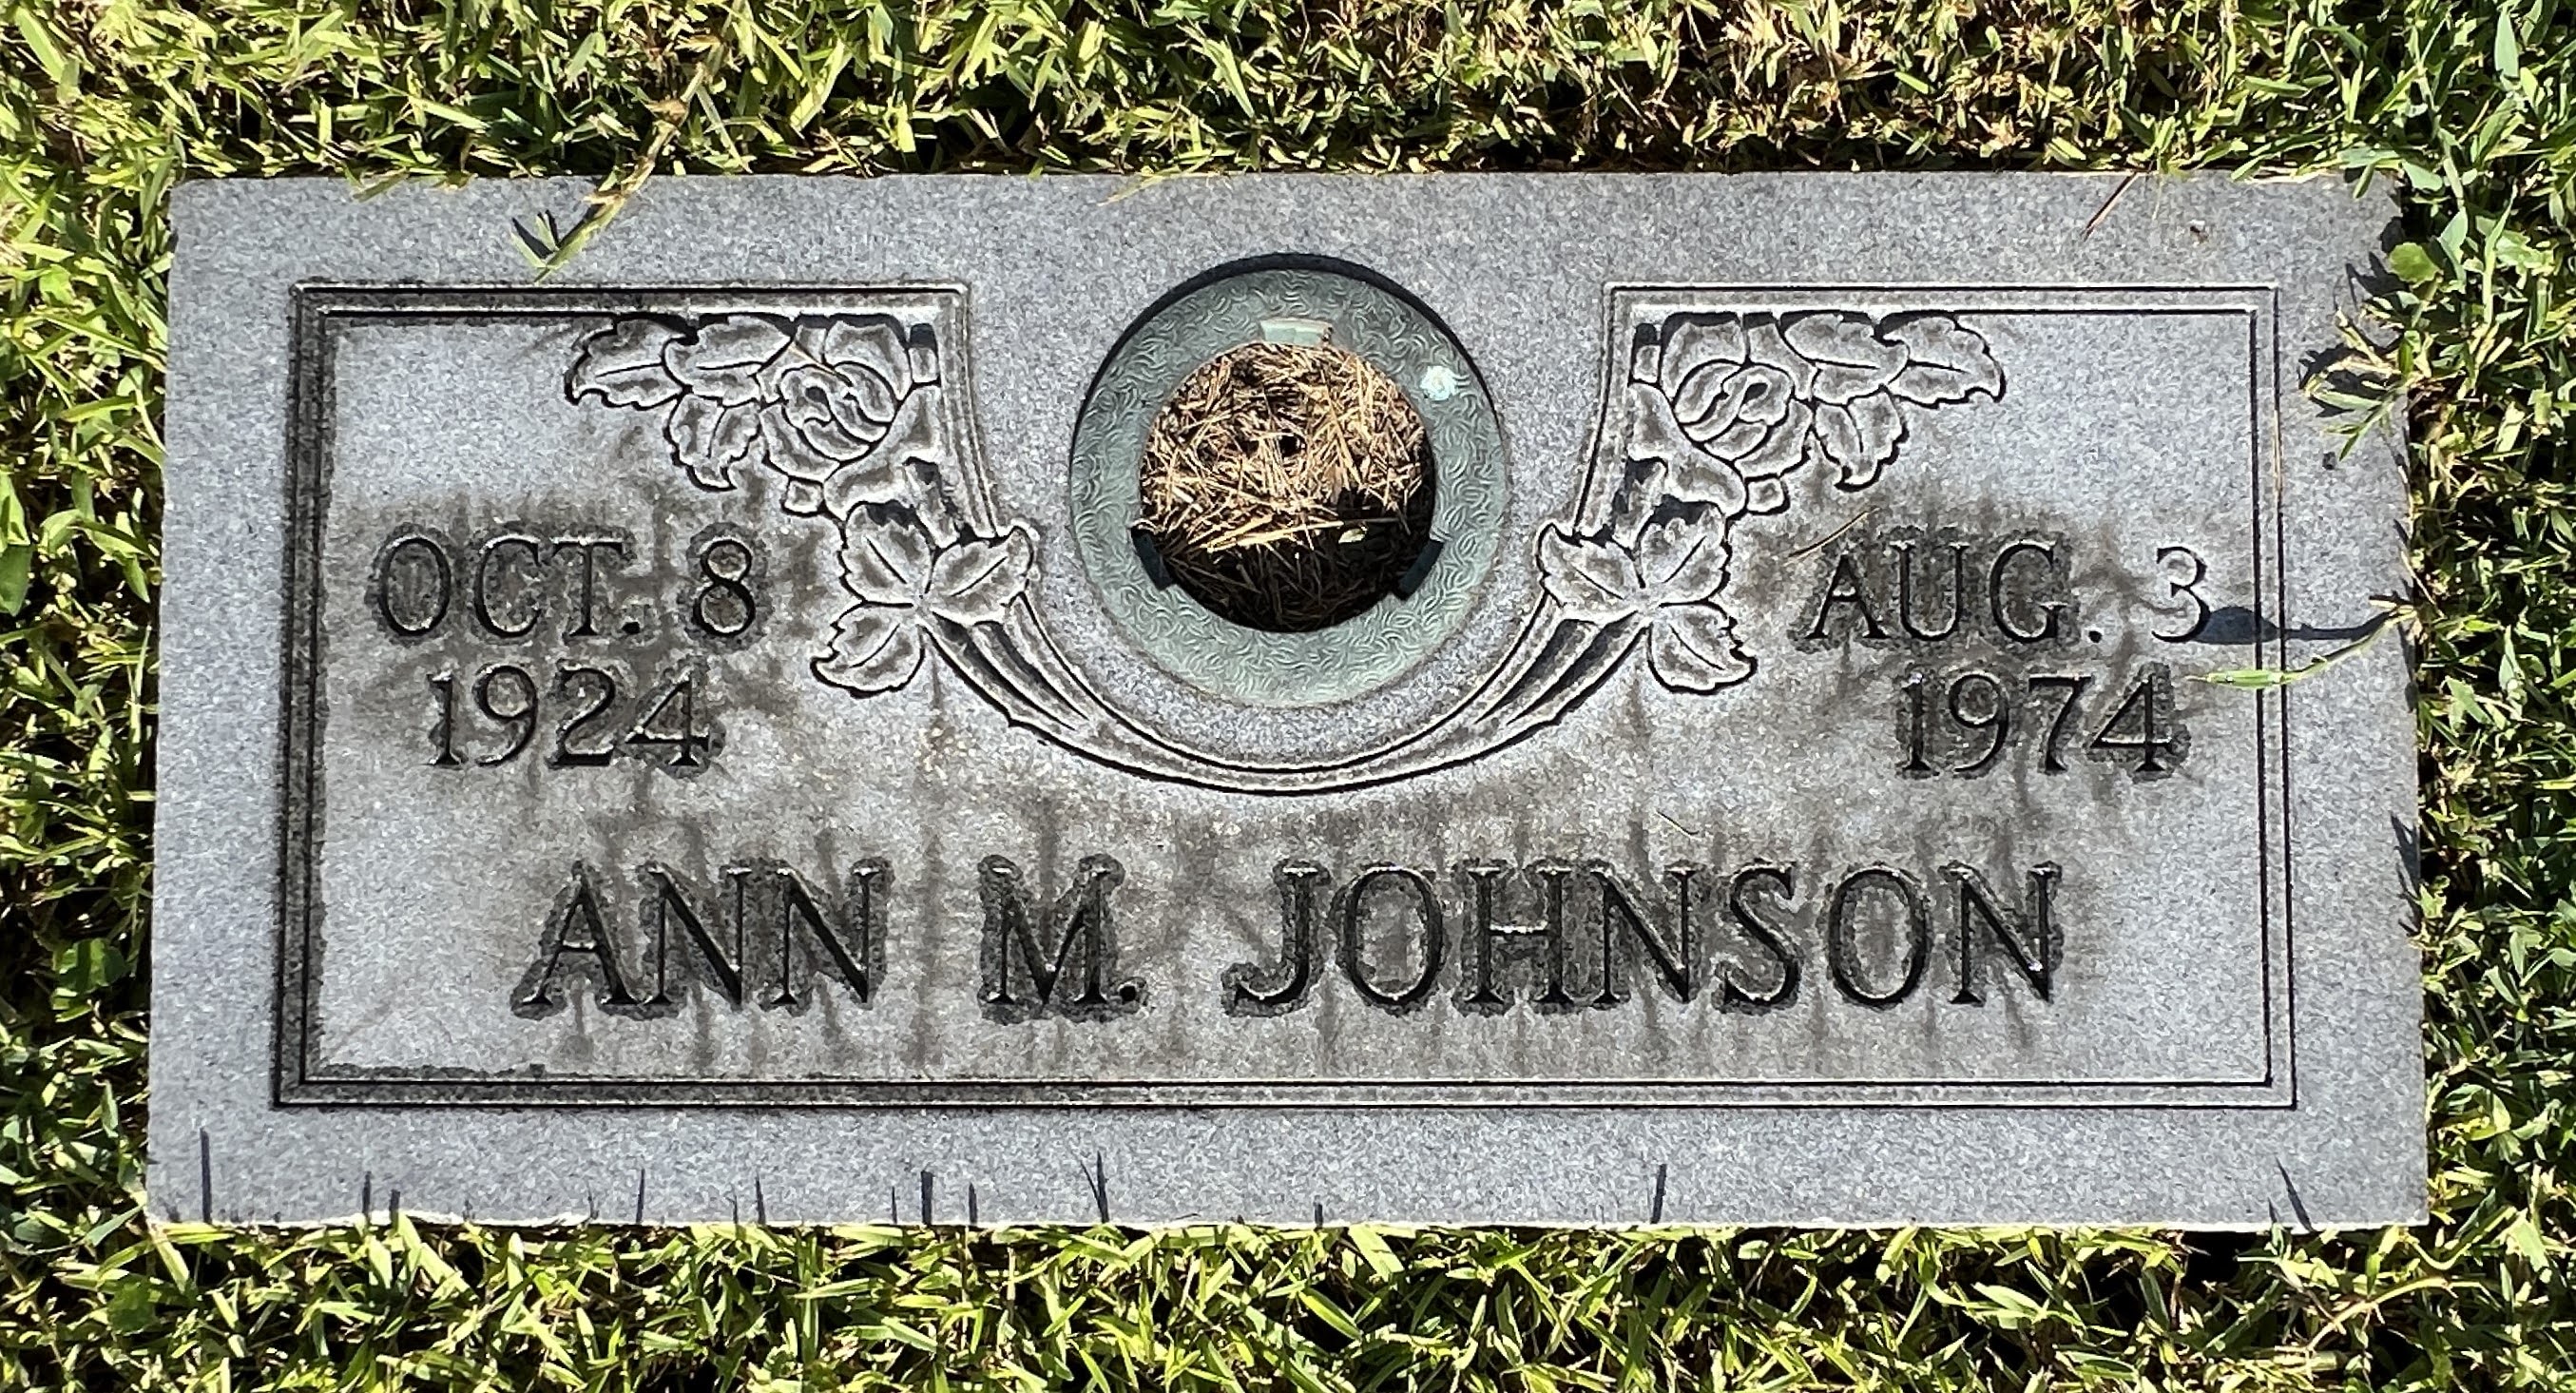 Ann M Johnson